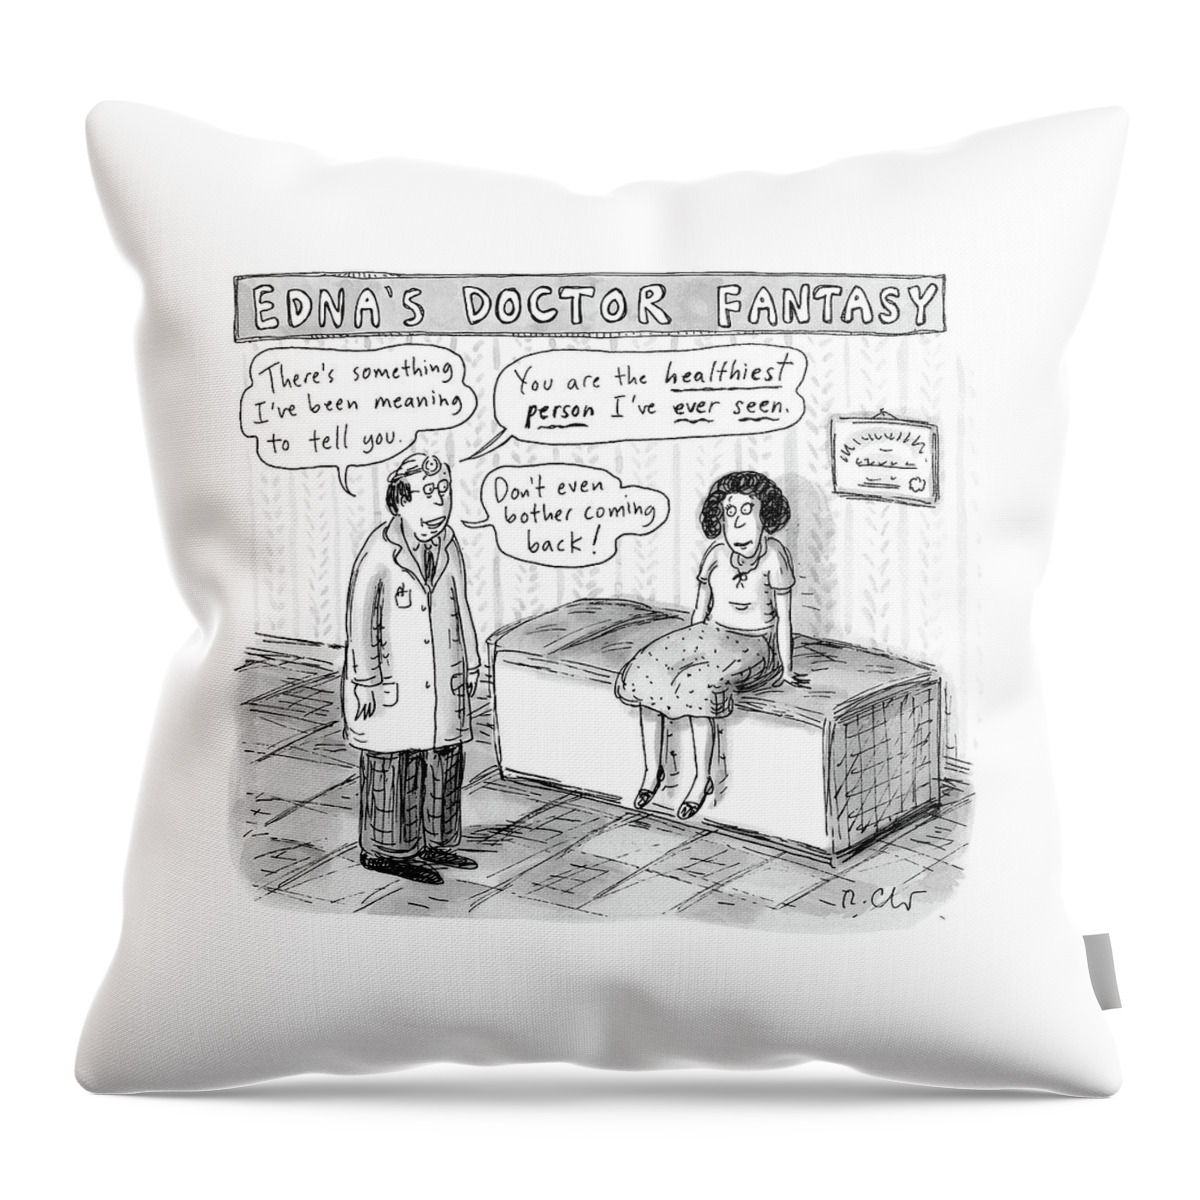 Edna's Doctor Fantasy Throw Pillow